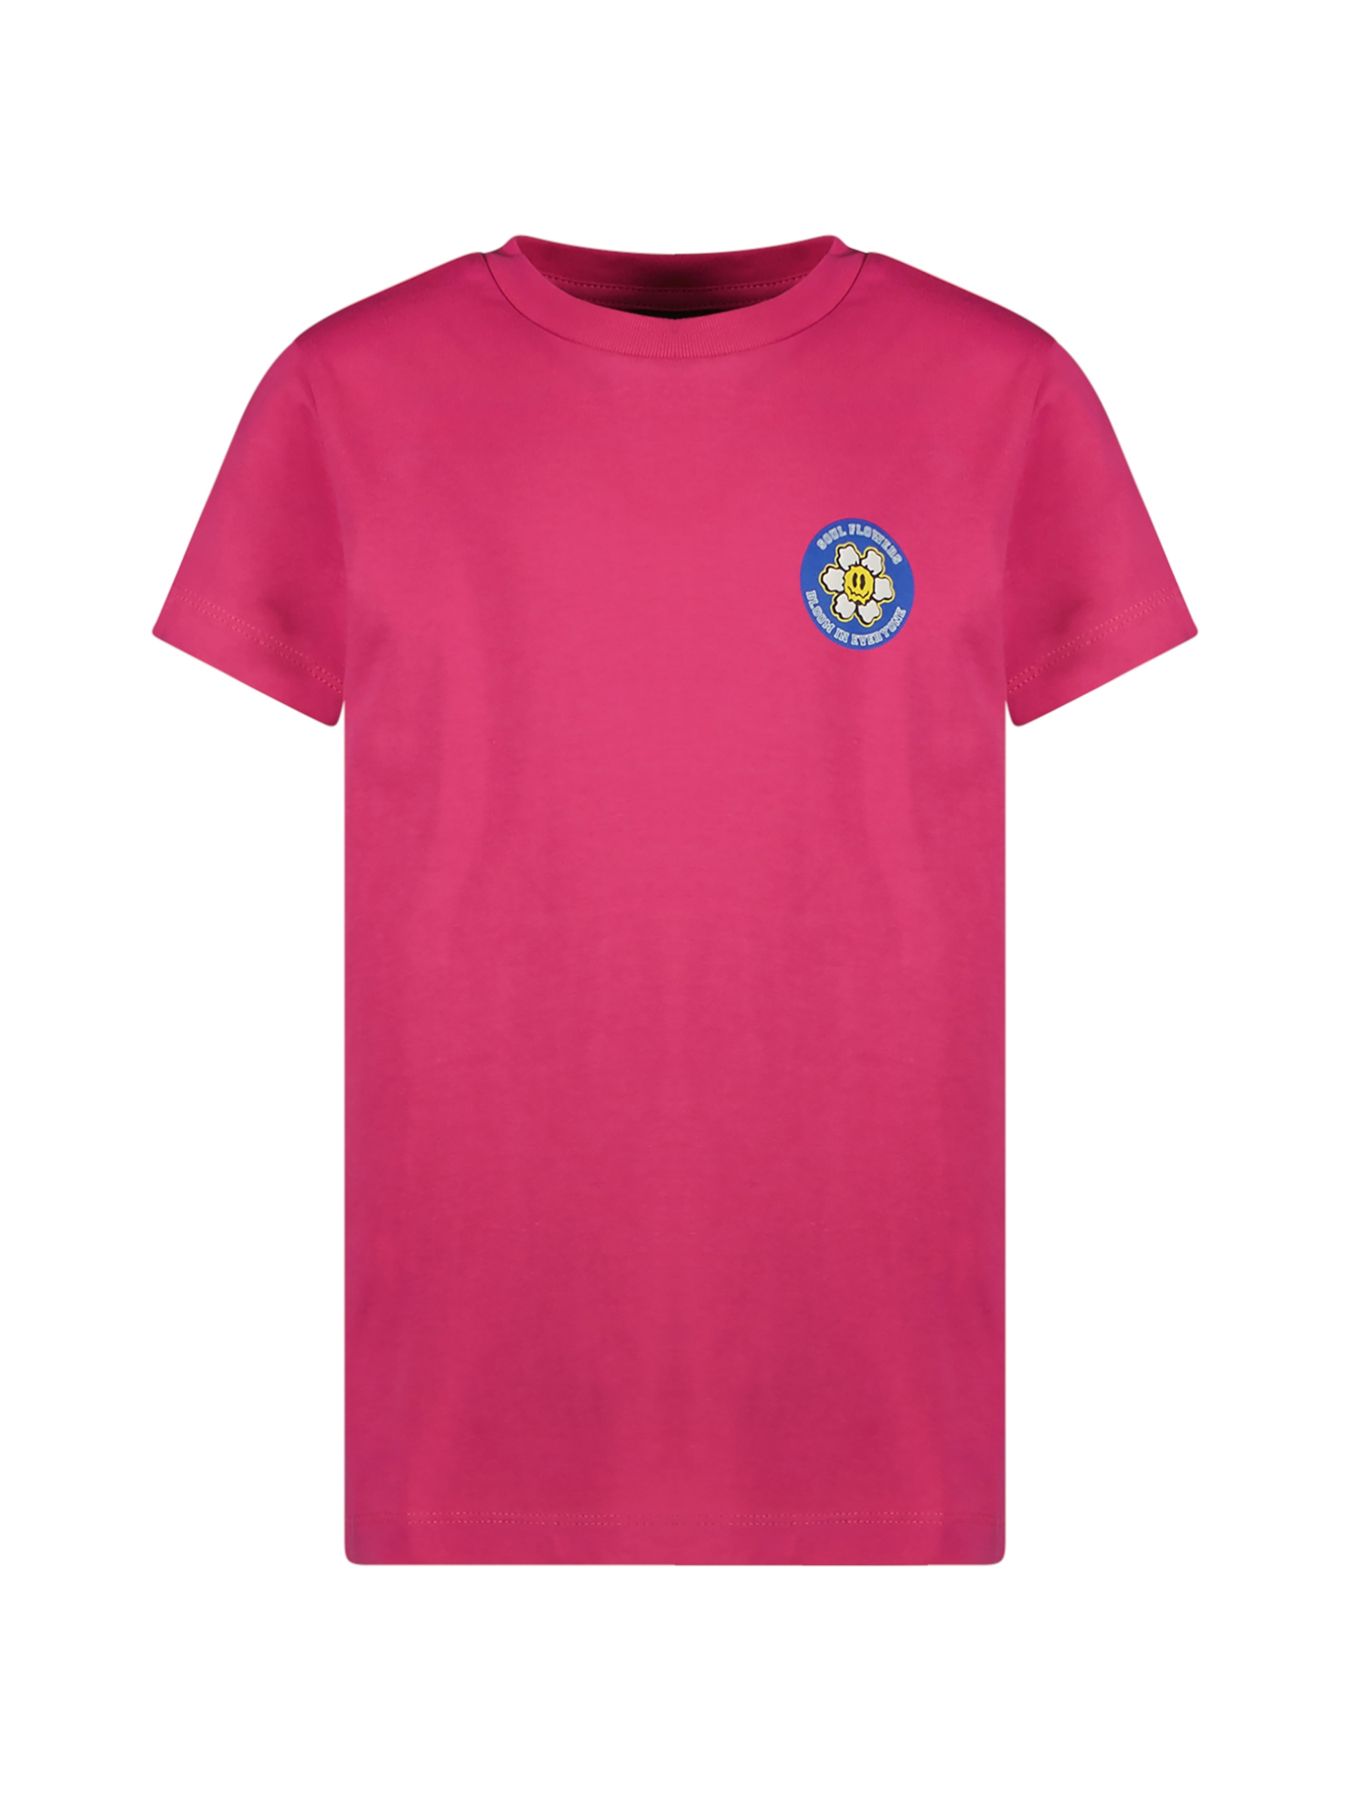 Cars Meisjes T-shirt Violett Jr. 69 pink 00107501-EKA03000200000044